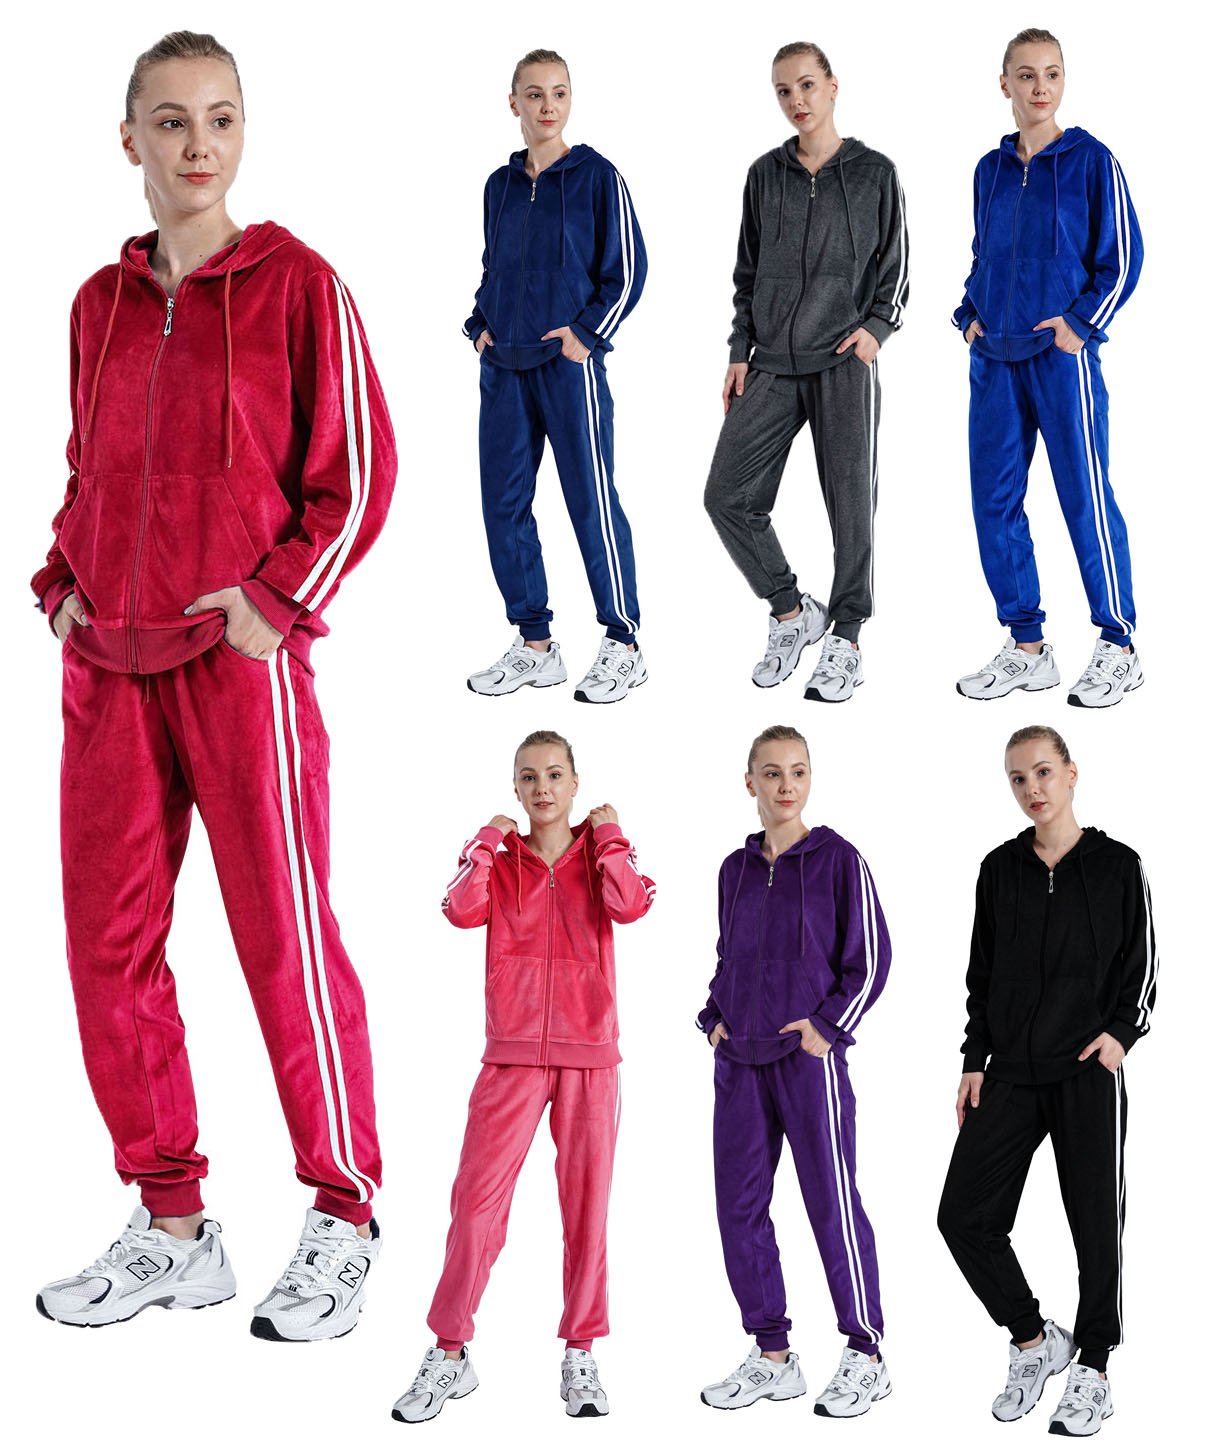 Women's Plus Size 2-Piece Soft Athletic Sweatsuit & Jogger Sets w/ Two Tone Stripes - Choose Your Co